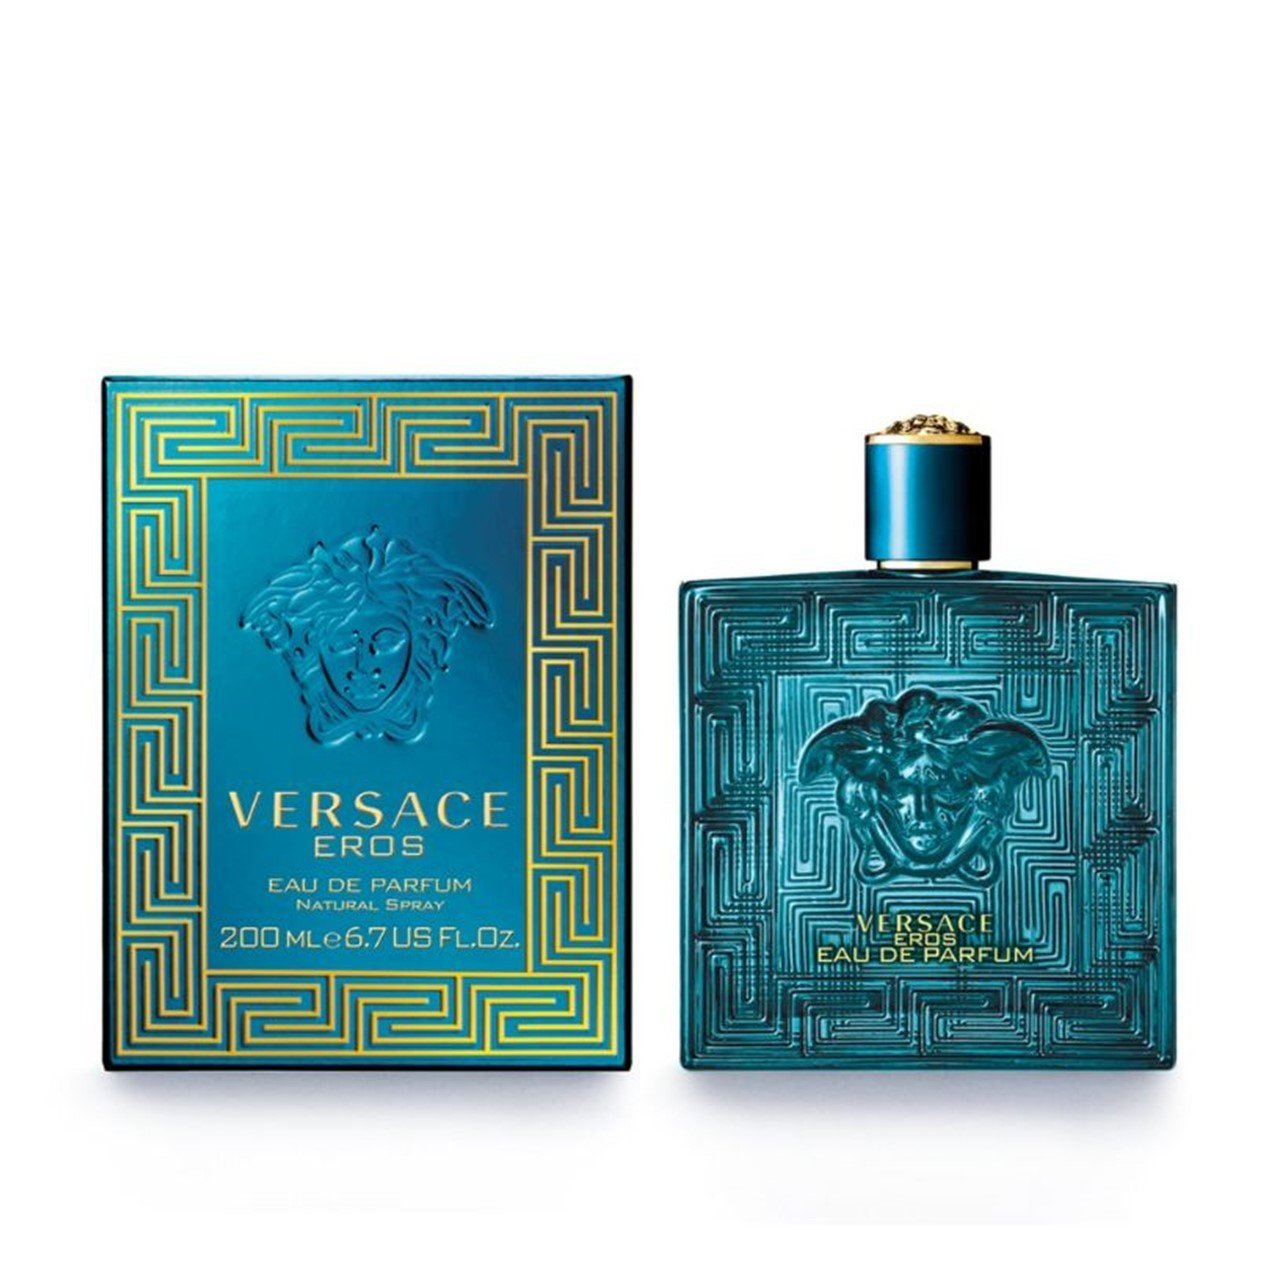 Versace Eros Eau de Parfum (6.8fl.oz.) USA